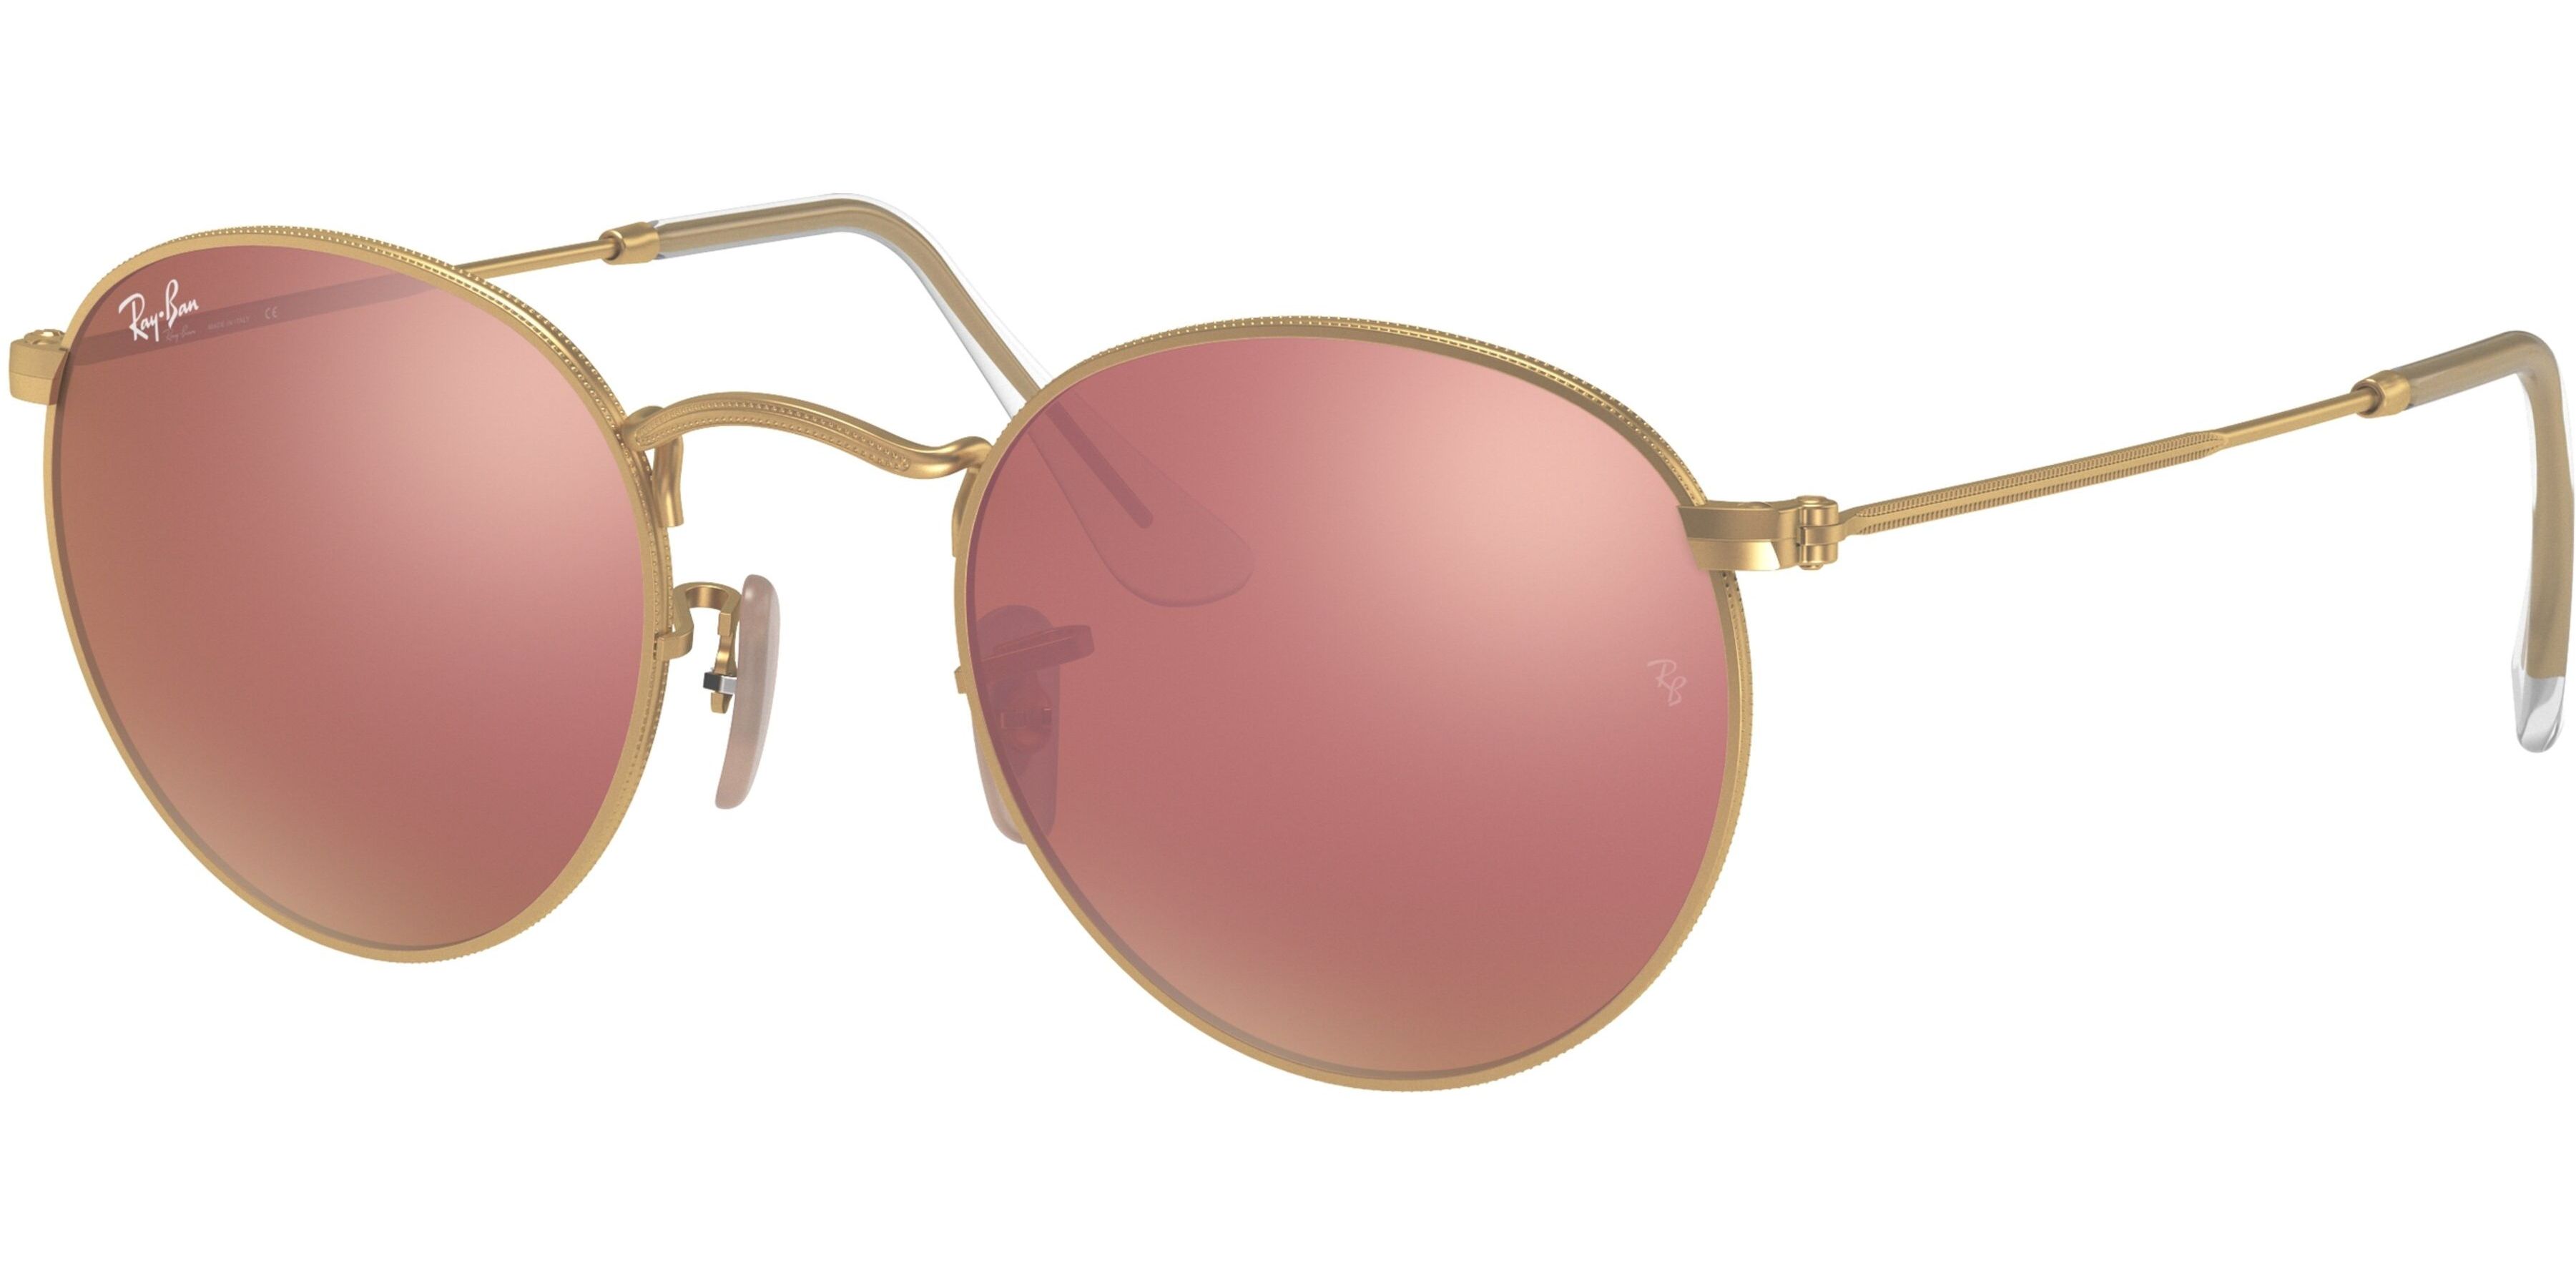 Sluneční brýle Ray-Ban® model 3447, barva obruby zlatá mat, čočka růžová zrcadlo, kód barevné varianty 112Z2. 